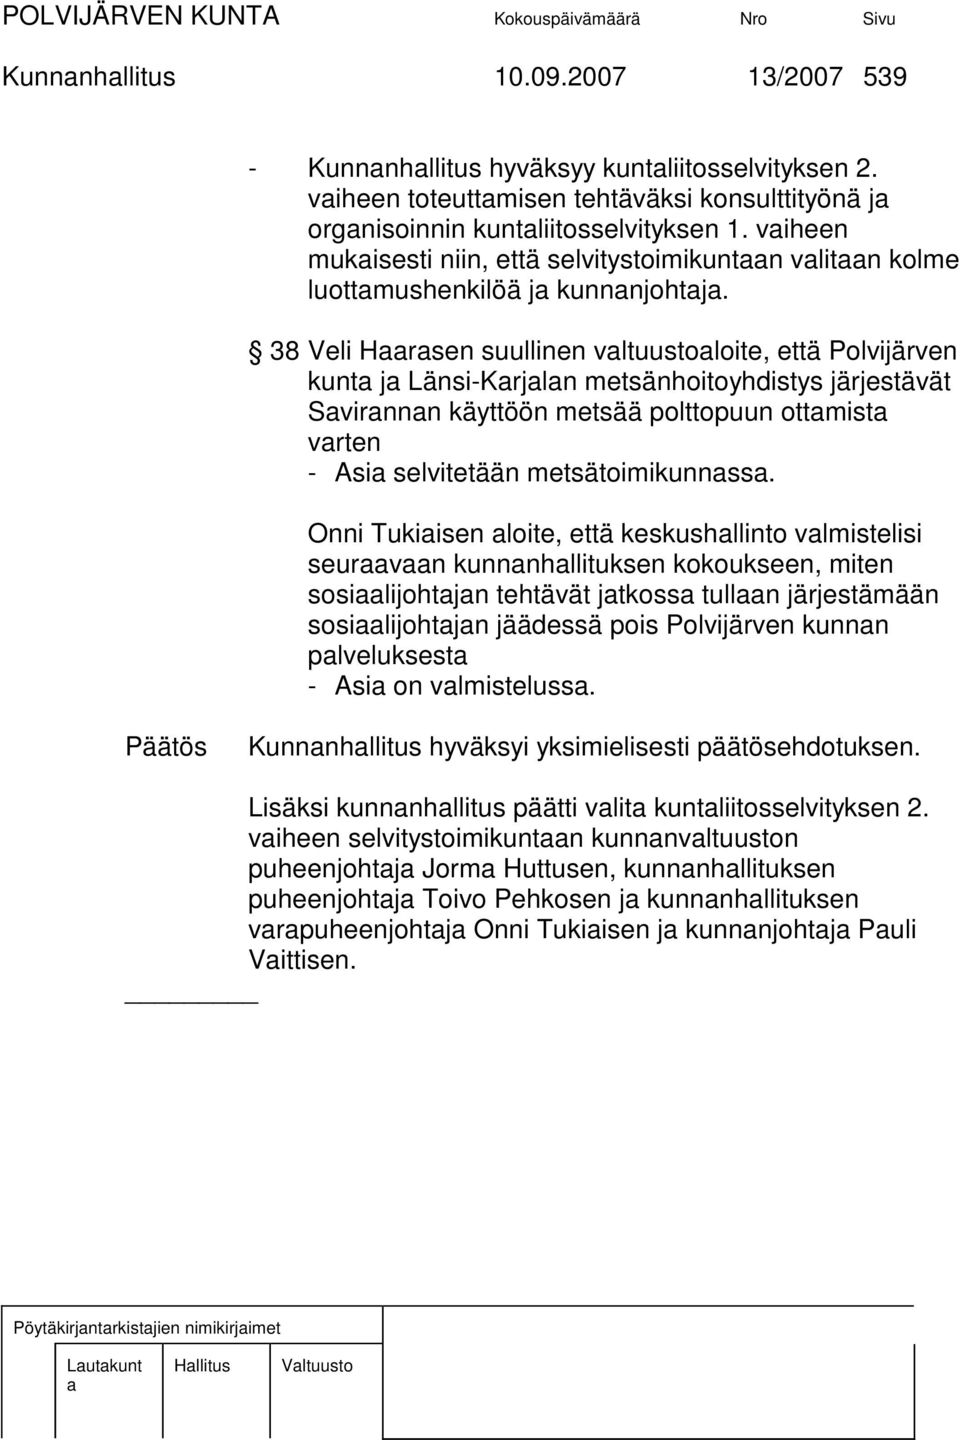 38 Veli Hrsen suullinen vltuustoloite, että Polvijärven kunt j Länsi-Krjln metsänhoitoyhdistys järjestävät Svirnnn käyttöön metsää polttopuun ottmist vrten - Asi selvitetään metsätoimikunnss.